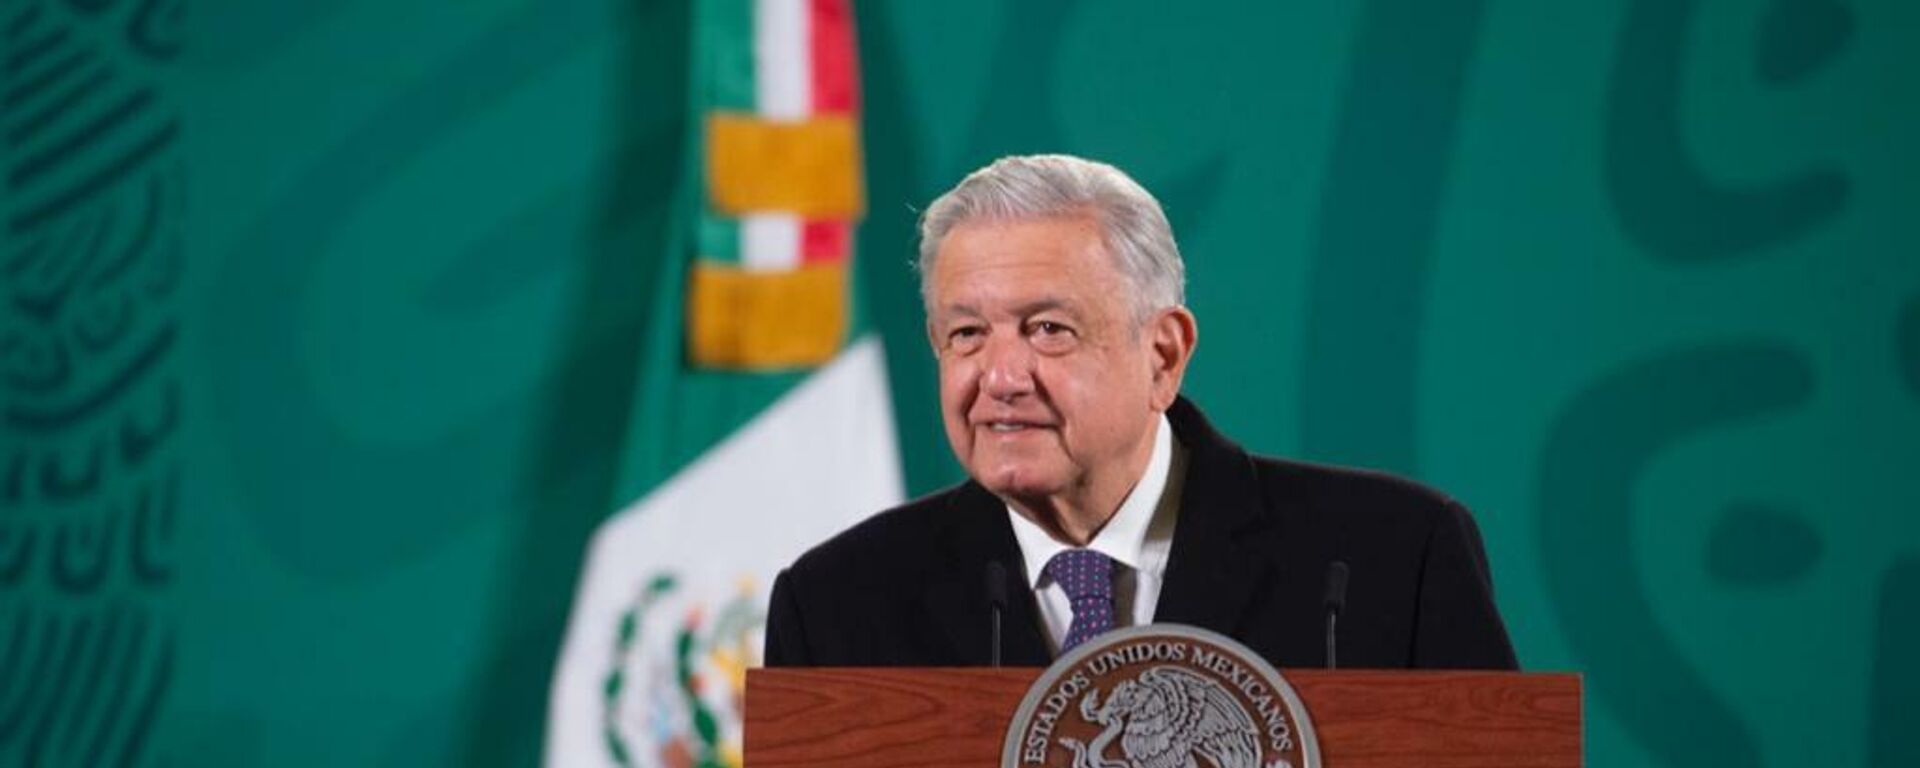 Andrés Manuel López Obrador, presidente de México  - Sputnik Mundo, 1920, 23.12.2021